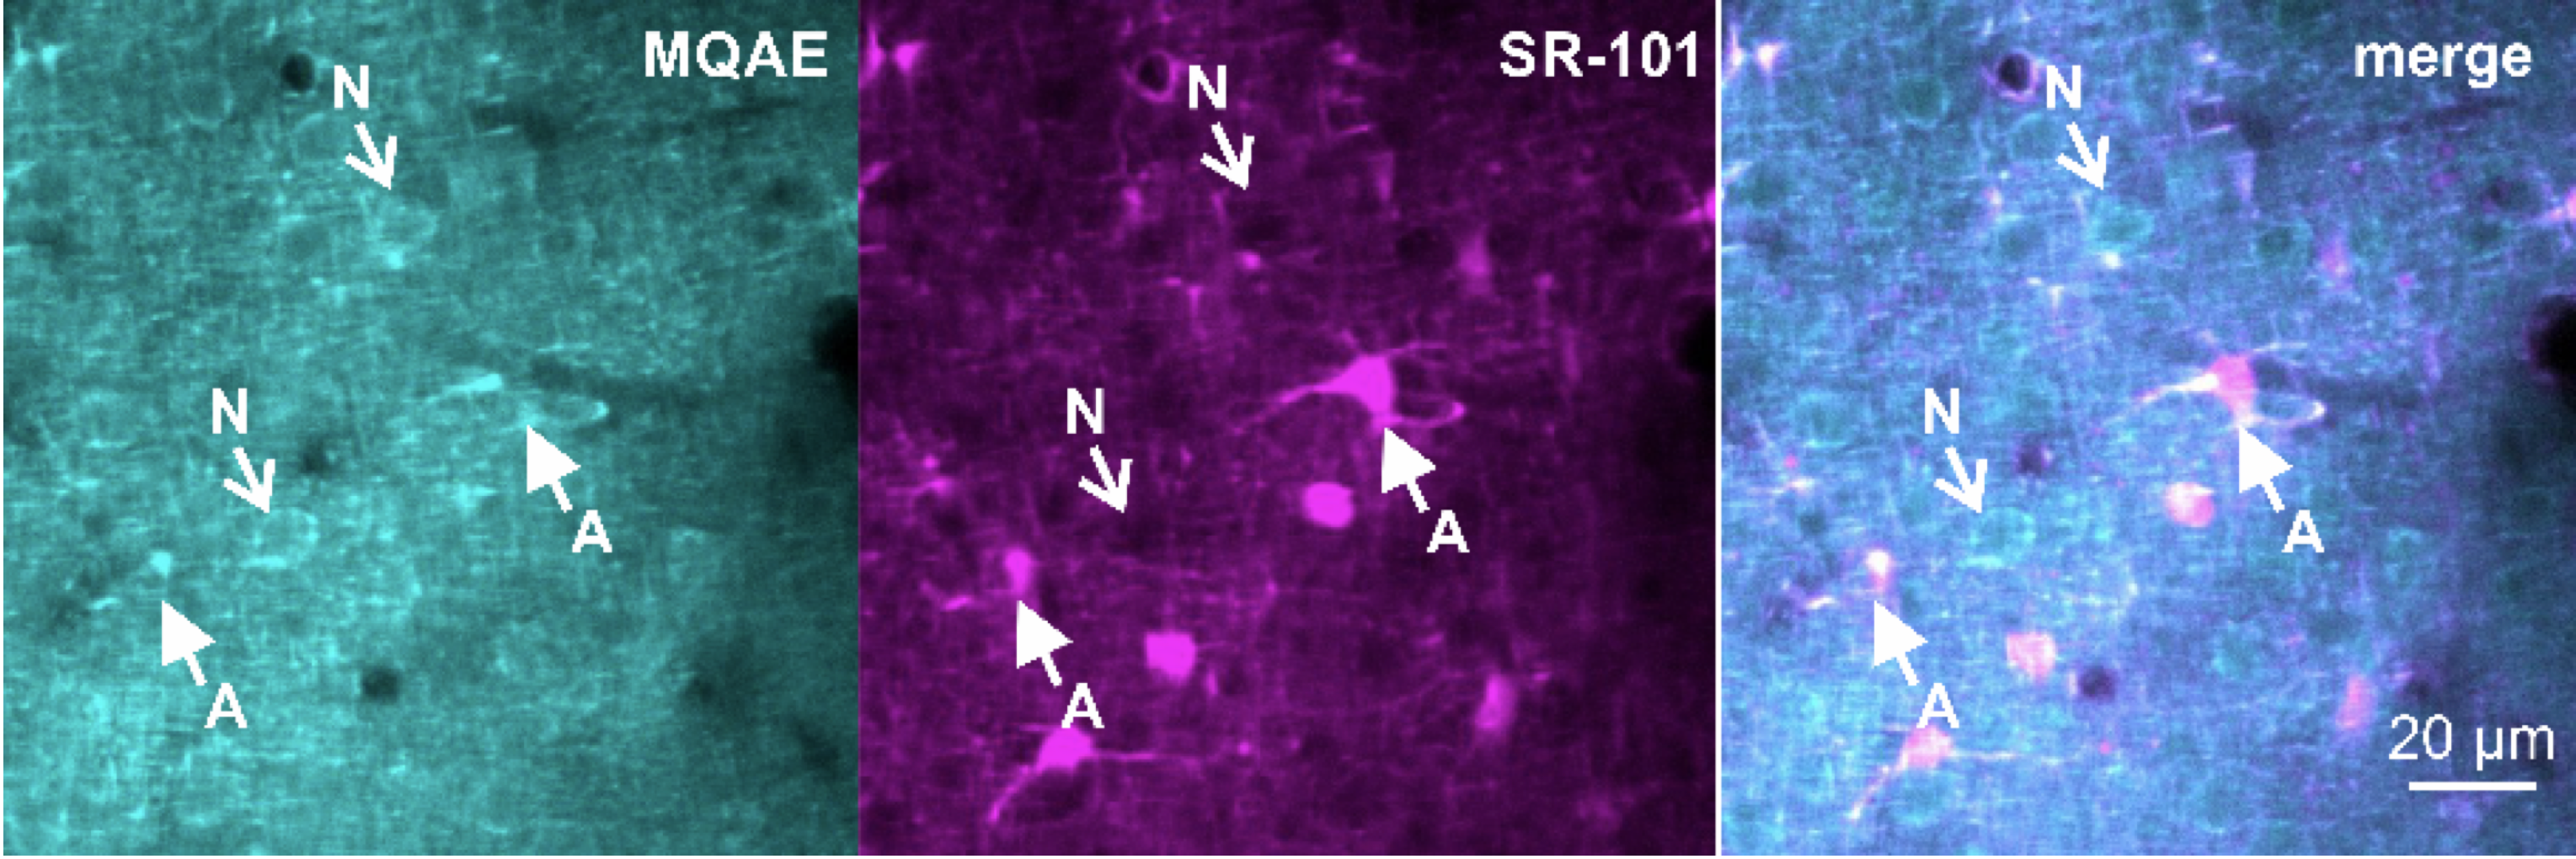 Astroglia and Neurons of cortex loaded MQAE (Cl- dye) in vivo. The Astroglial marker SR-101 labels Astroglia.